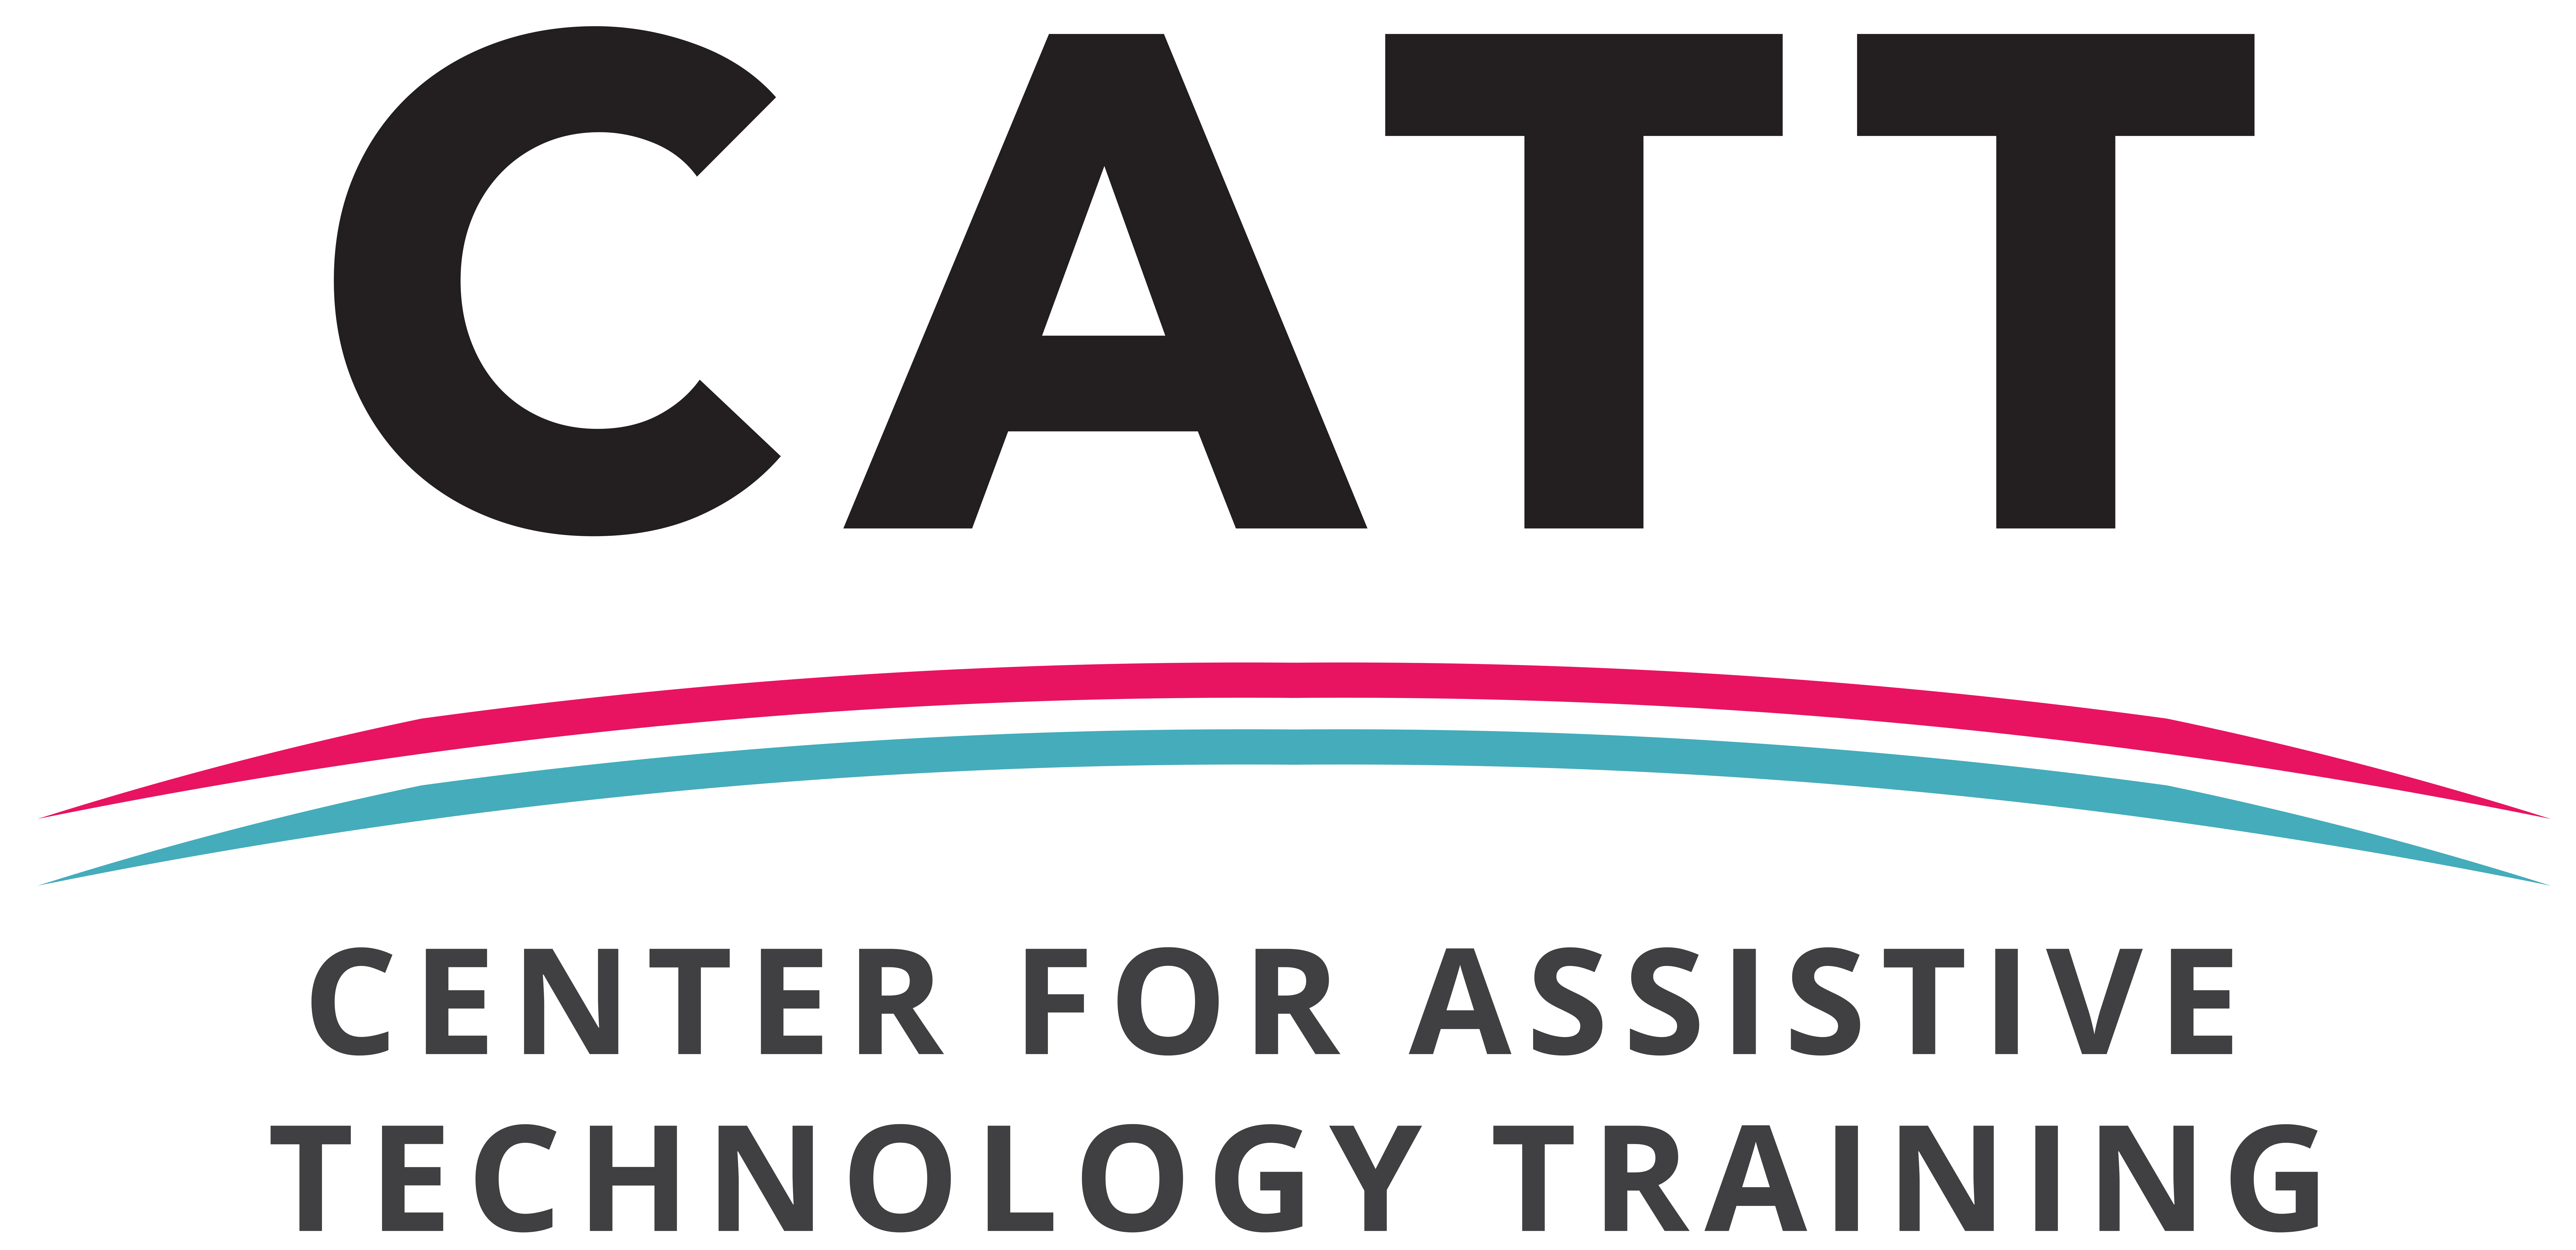 CATT Center for Assistive Technology Training